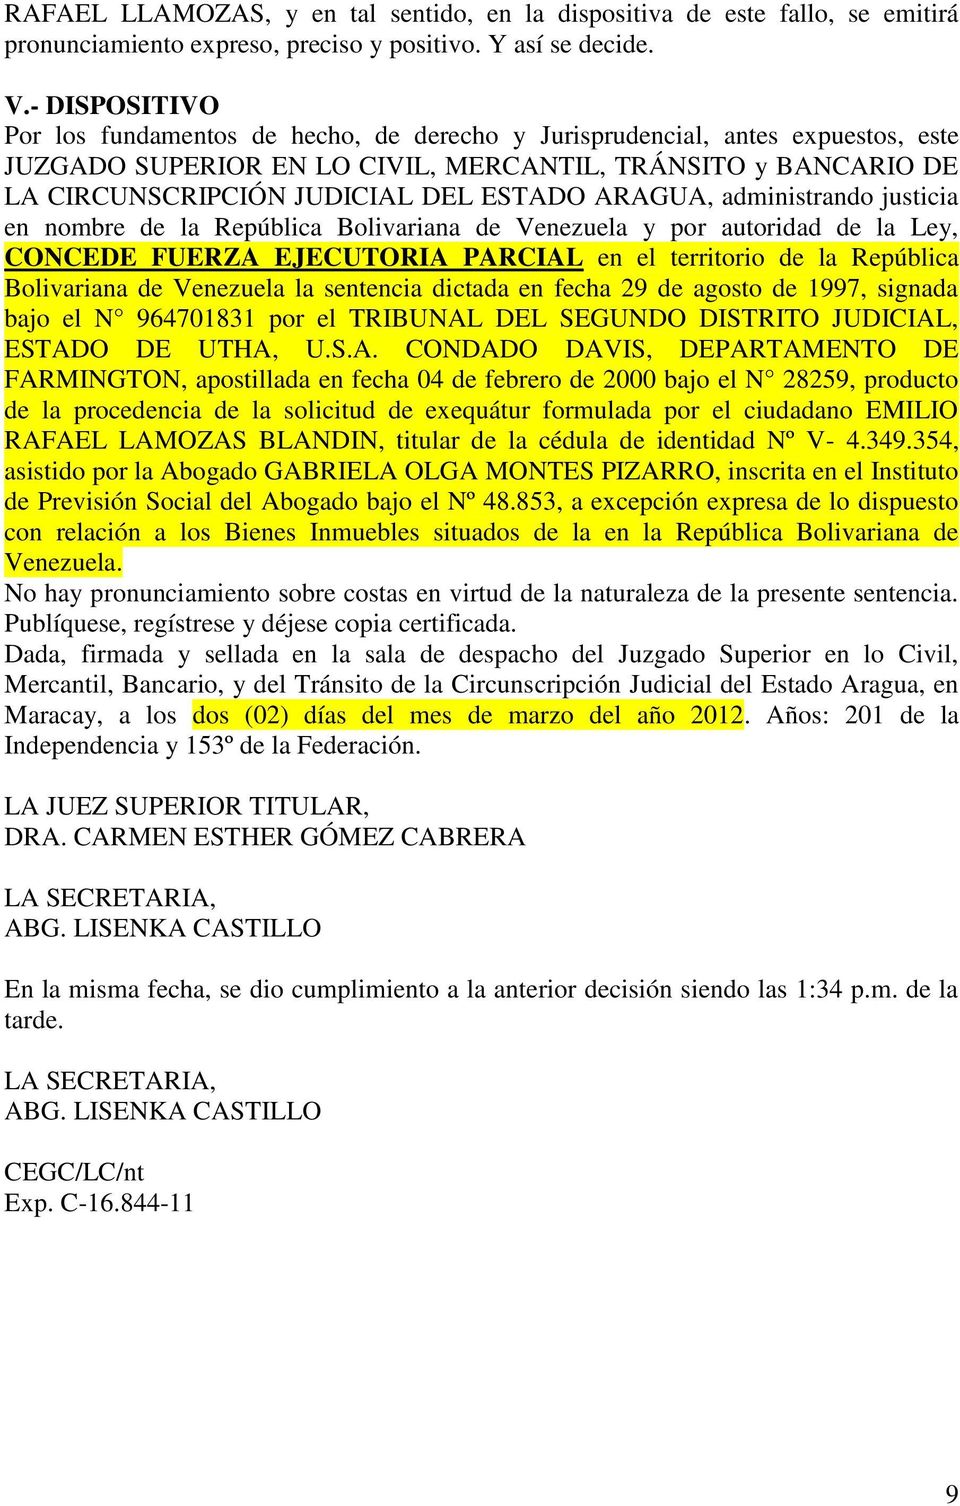 ARAGUA, administrando justicia en nombre de la República Bolivariana de Venezuela y por autoridad de la Ley, CONCEDE FUERZA EJECUTORIA PARCIAL en el territorio de la República Bolivariana de